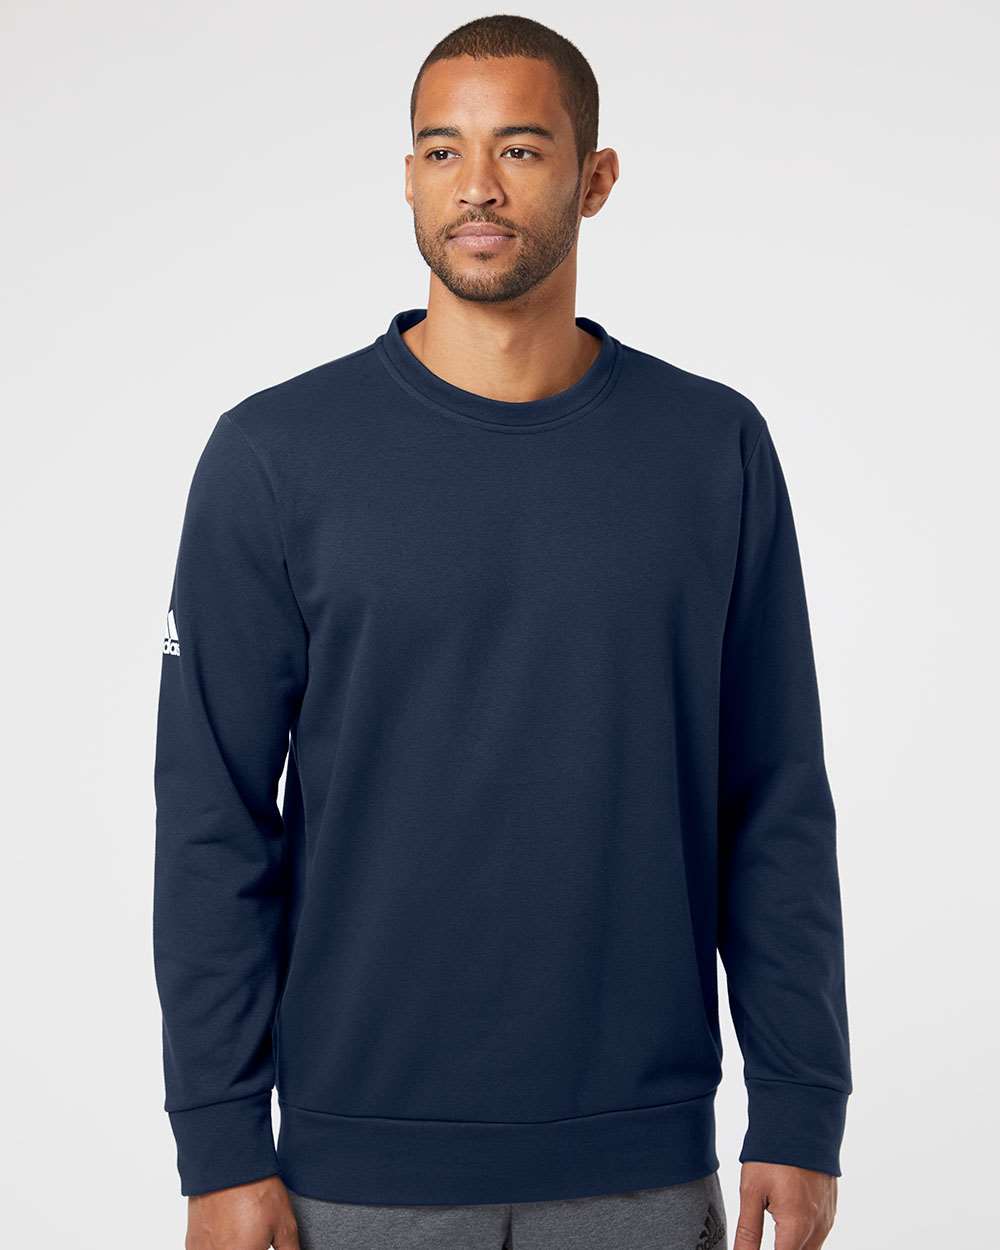 Adidas A434 Fleece Crewneck Sweatshirt #colormdl_Collegiate Navy